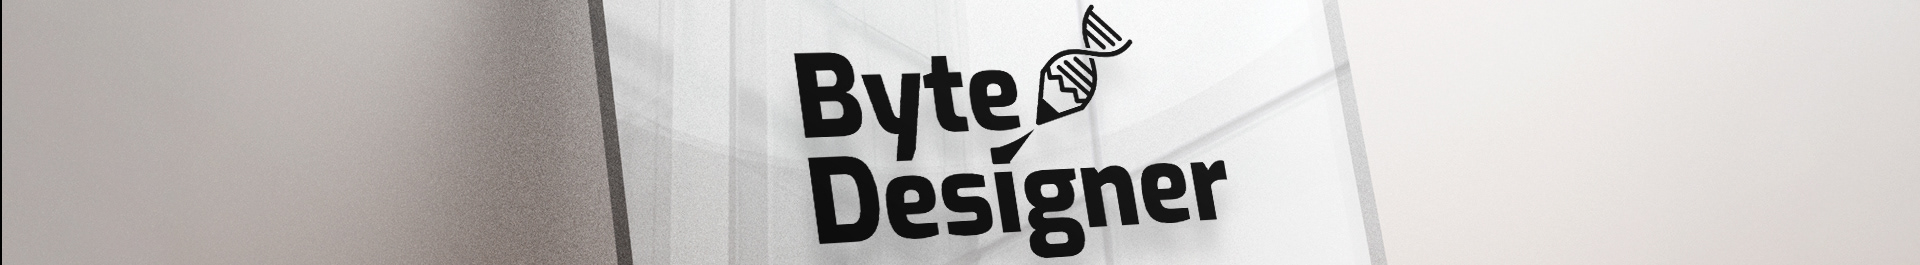 Byte Designer's profile banner